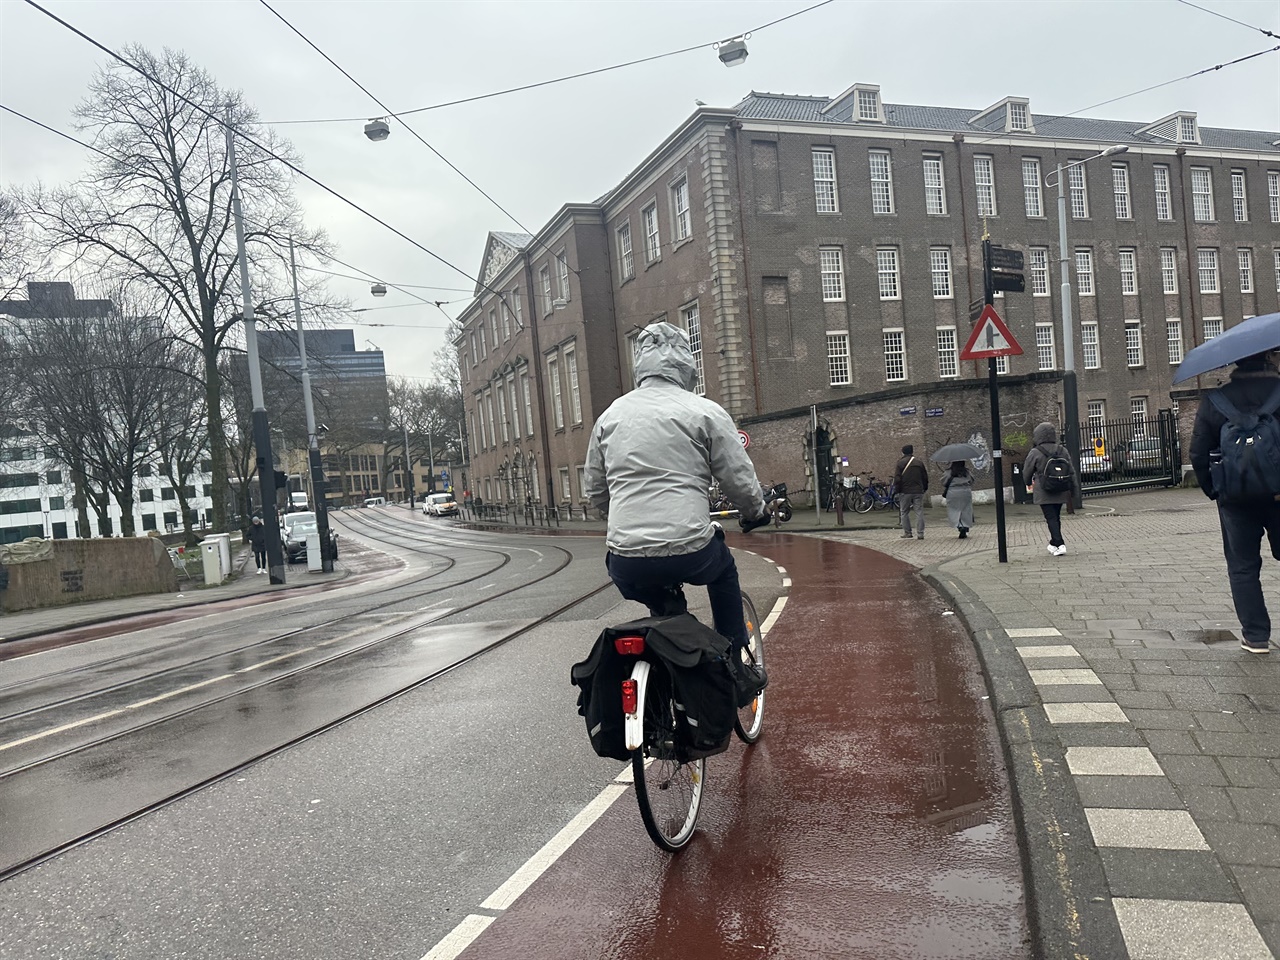 일행이 메러디스 교수와의 인터뷰를 위해 찾은 2월 28일 아침, 암스테르담은 비와 눈이 뒤섞여 내리고 있었다. 출근 시간이 다소 지났지만 자전거를 탄 풍경이 간간이 목격되었다. '비가 내리지만...' 이 사람들의 일상은 여전히 자전거다.